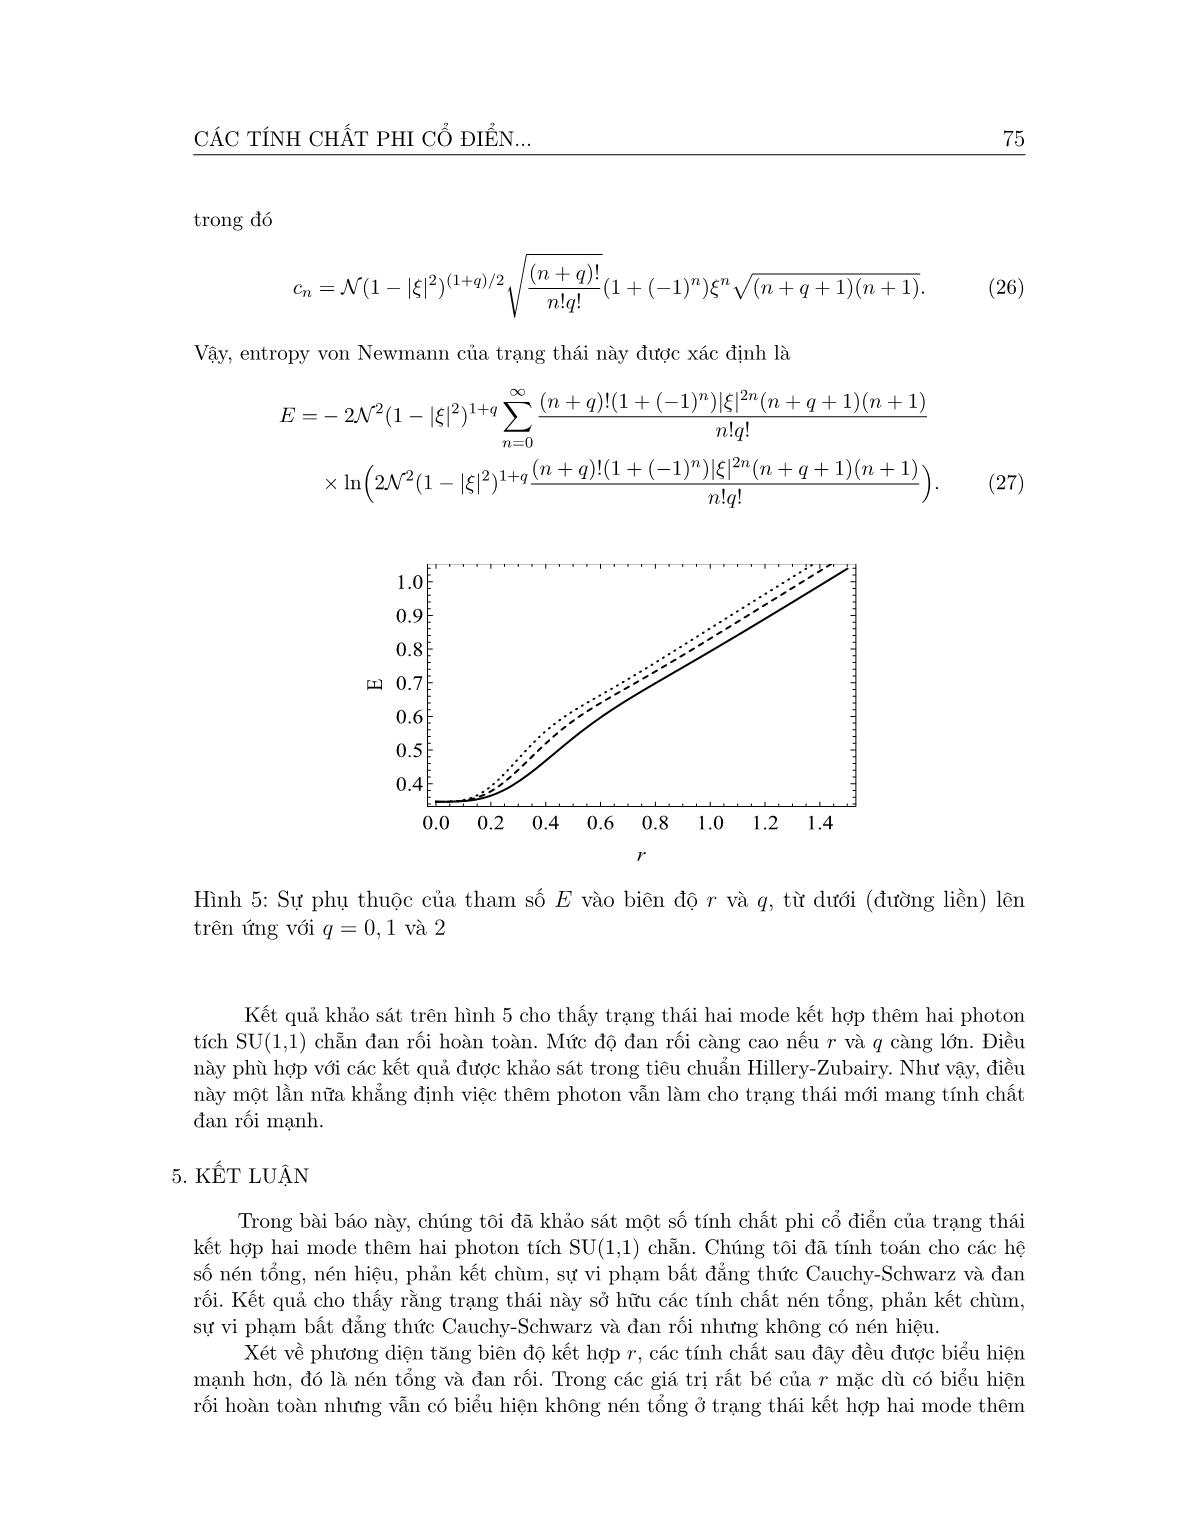 Các tính chất phi cổ điển của trạng thái hai mode kết hợp thêm hai photon tích su(1,1) chẵn trang 8